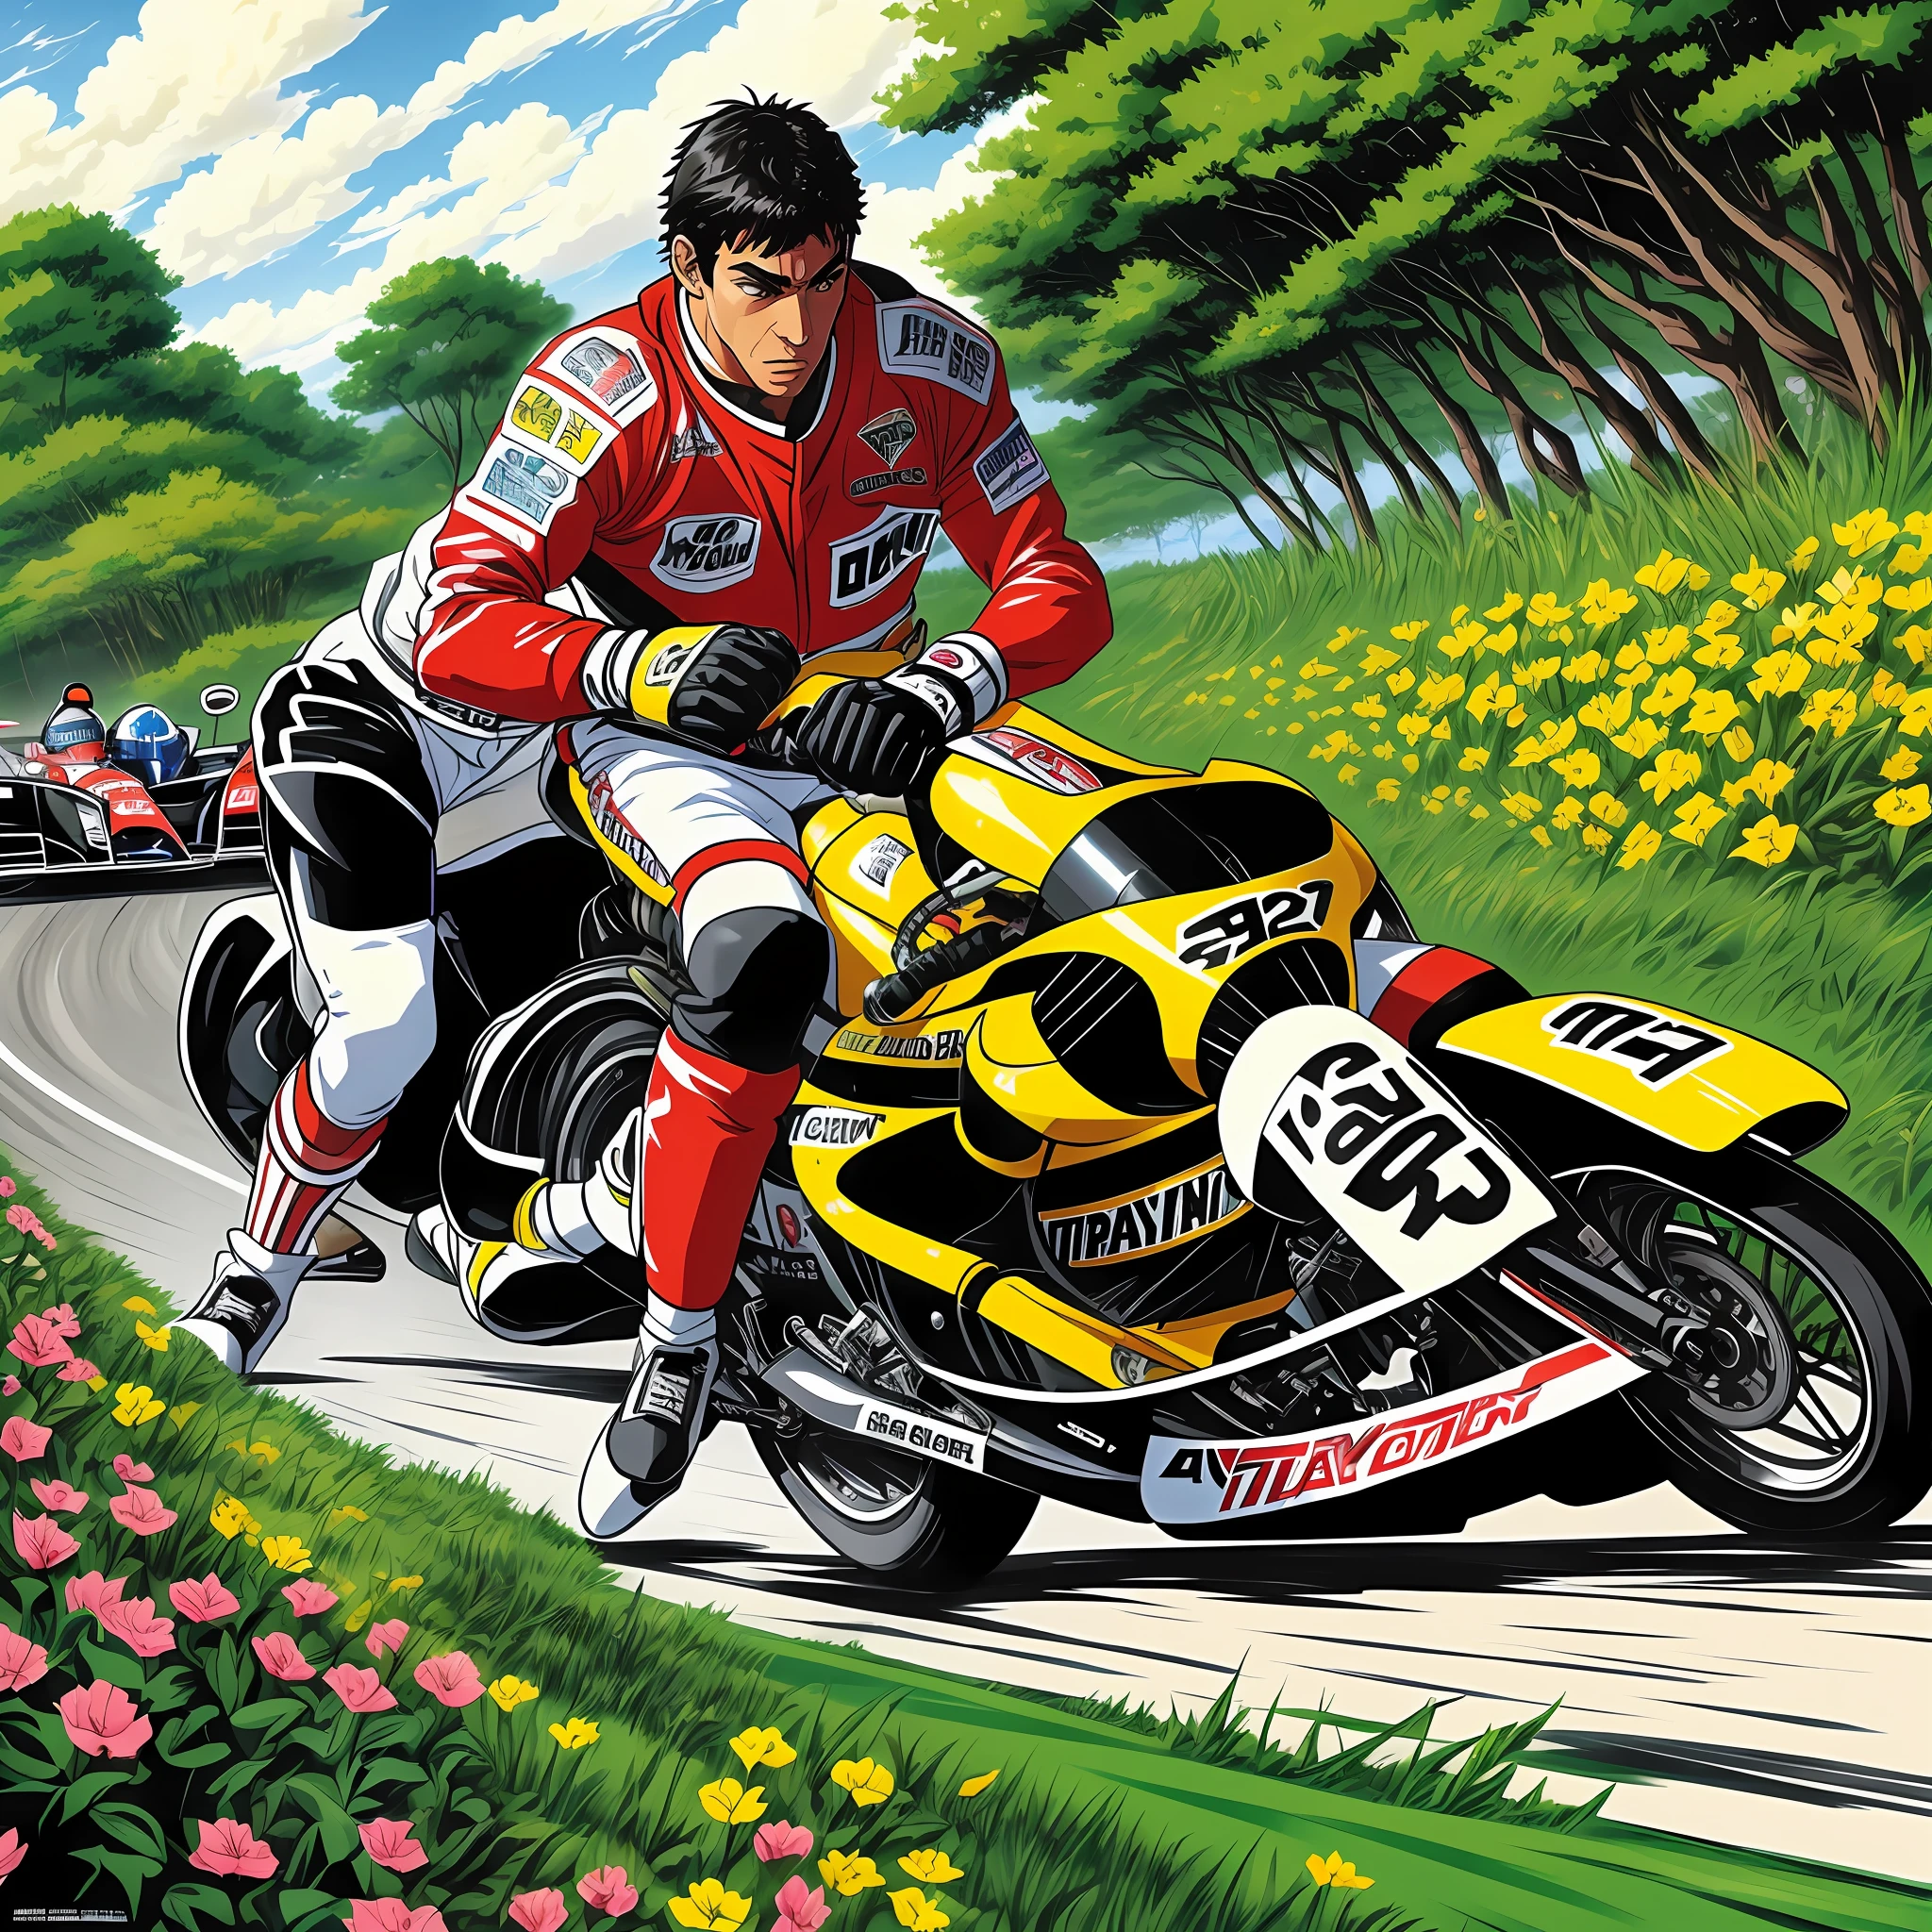 Mayky Tayson kämpft in einer Anime-Landschaft gegen Ayrton Senna --auto --s2